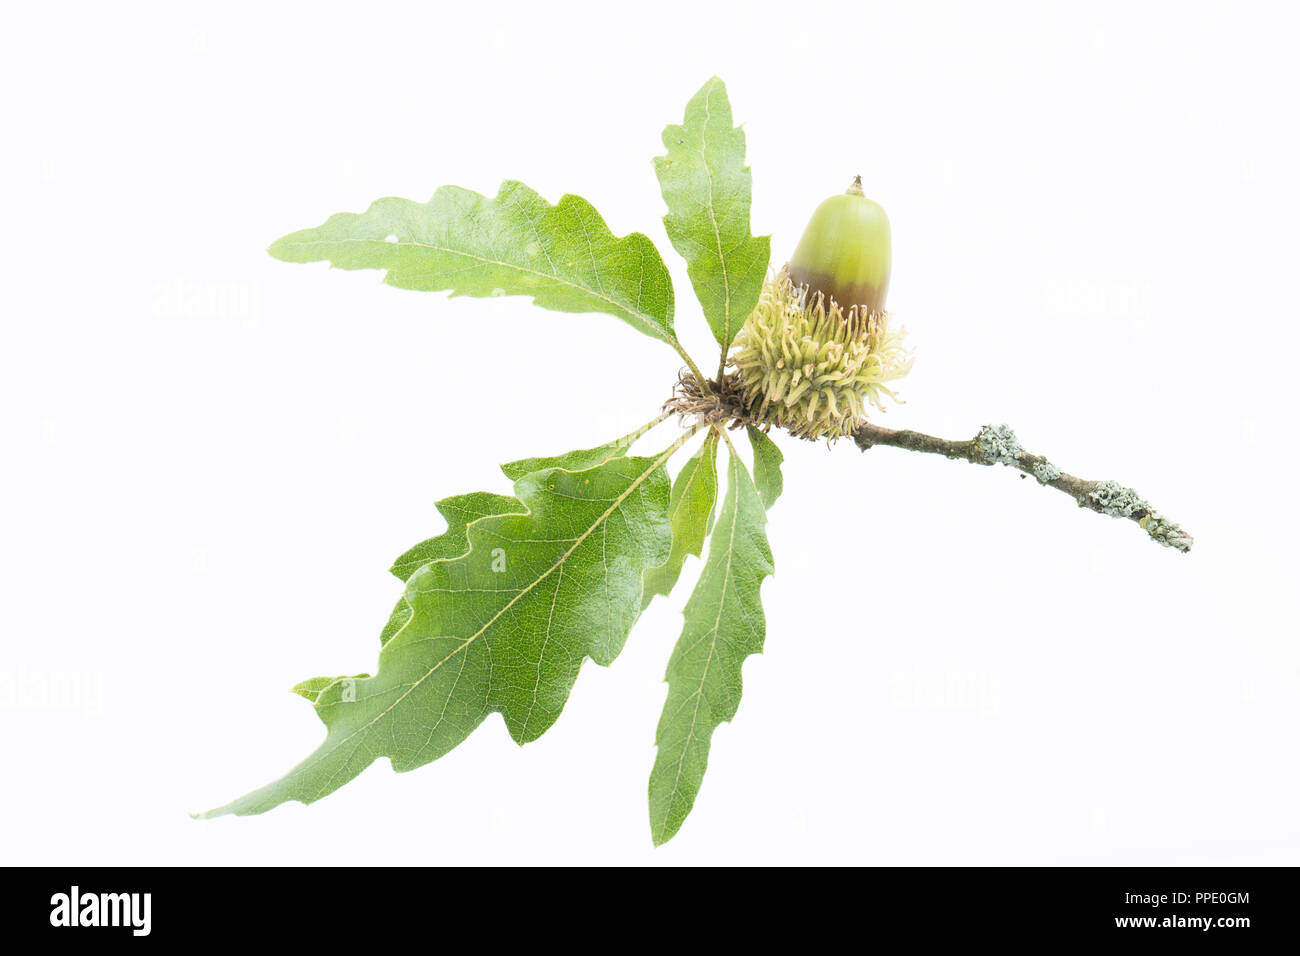 Un gland de la Turquie, Quercus cerris, photographié sur un fond blanc. Le chêne de la Turquie a été introduit au Royaume-Uni au début du 18e siècle comi Banque D'Images